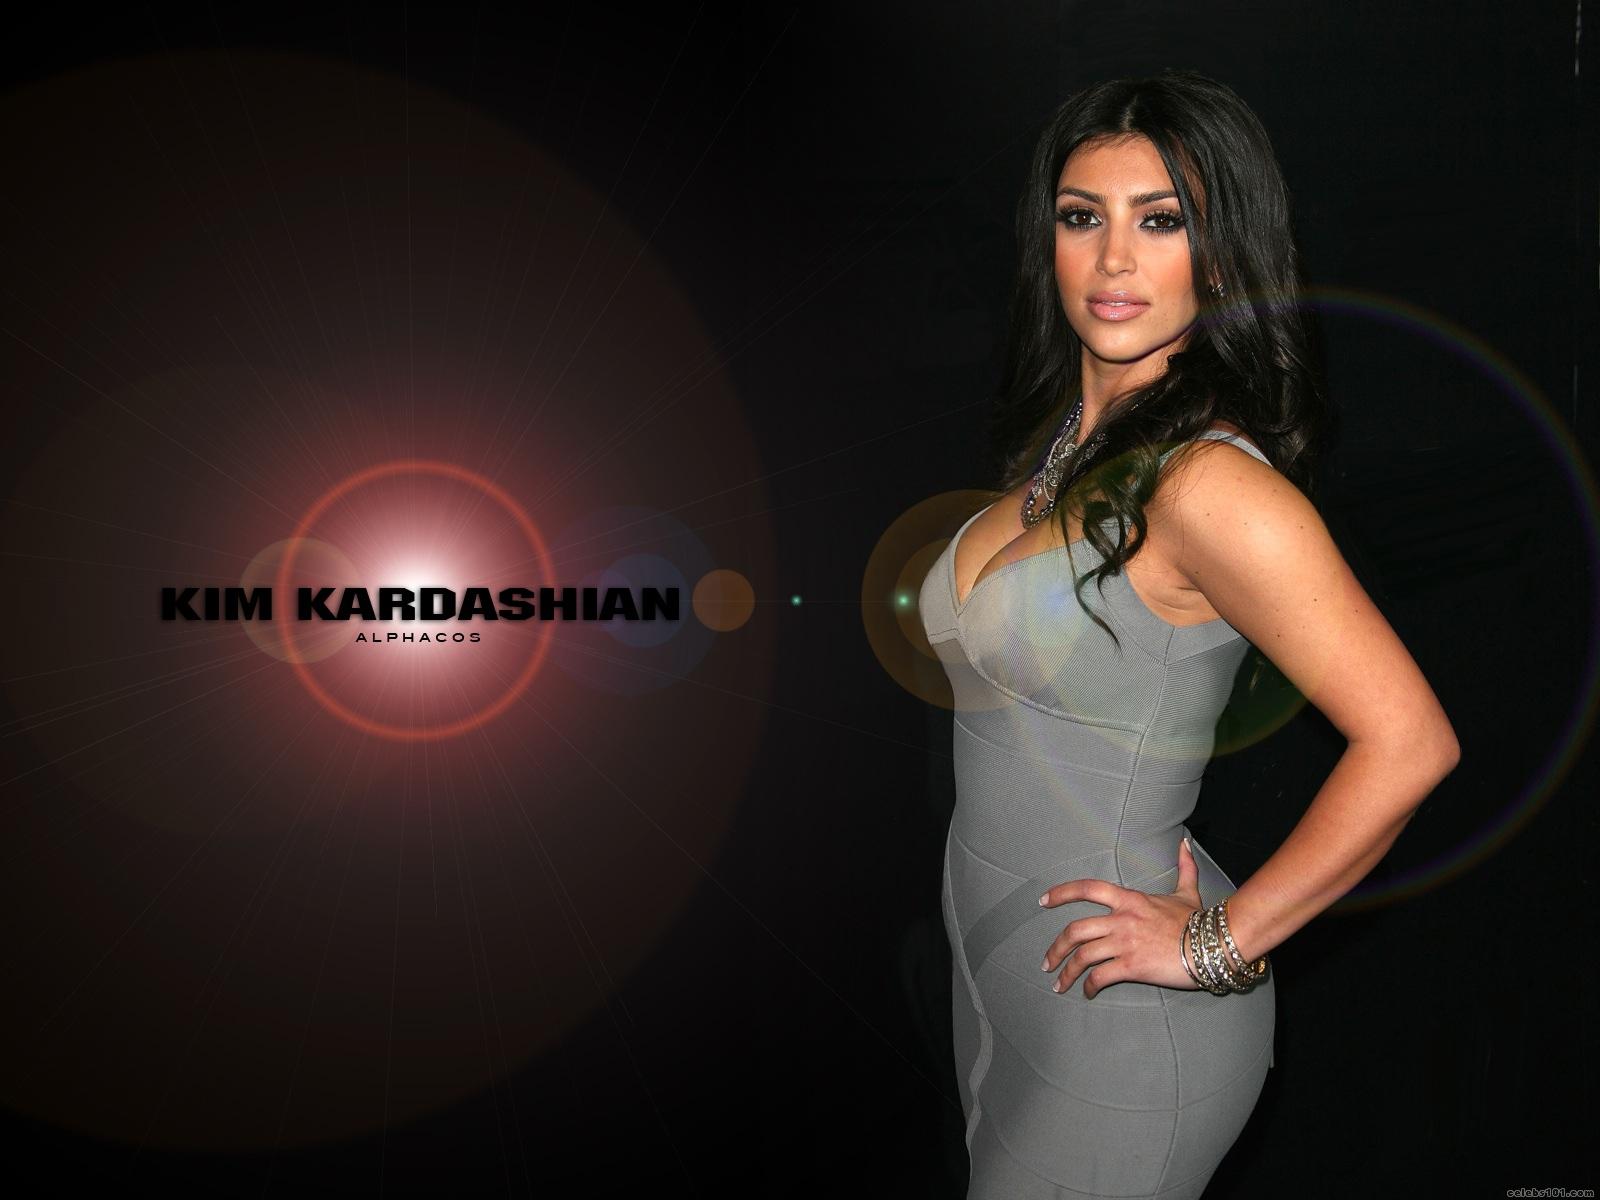 http://2.bp.blogspot.com/-nGm8w8jokb0/Tem5ibd0chI/AAAAAAAAFMQ/EUJnSlrK1ak/s1600/Kim+Kardashian50.jpg